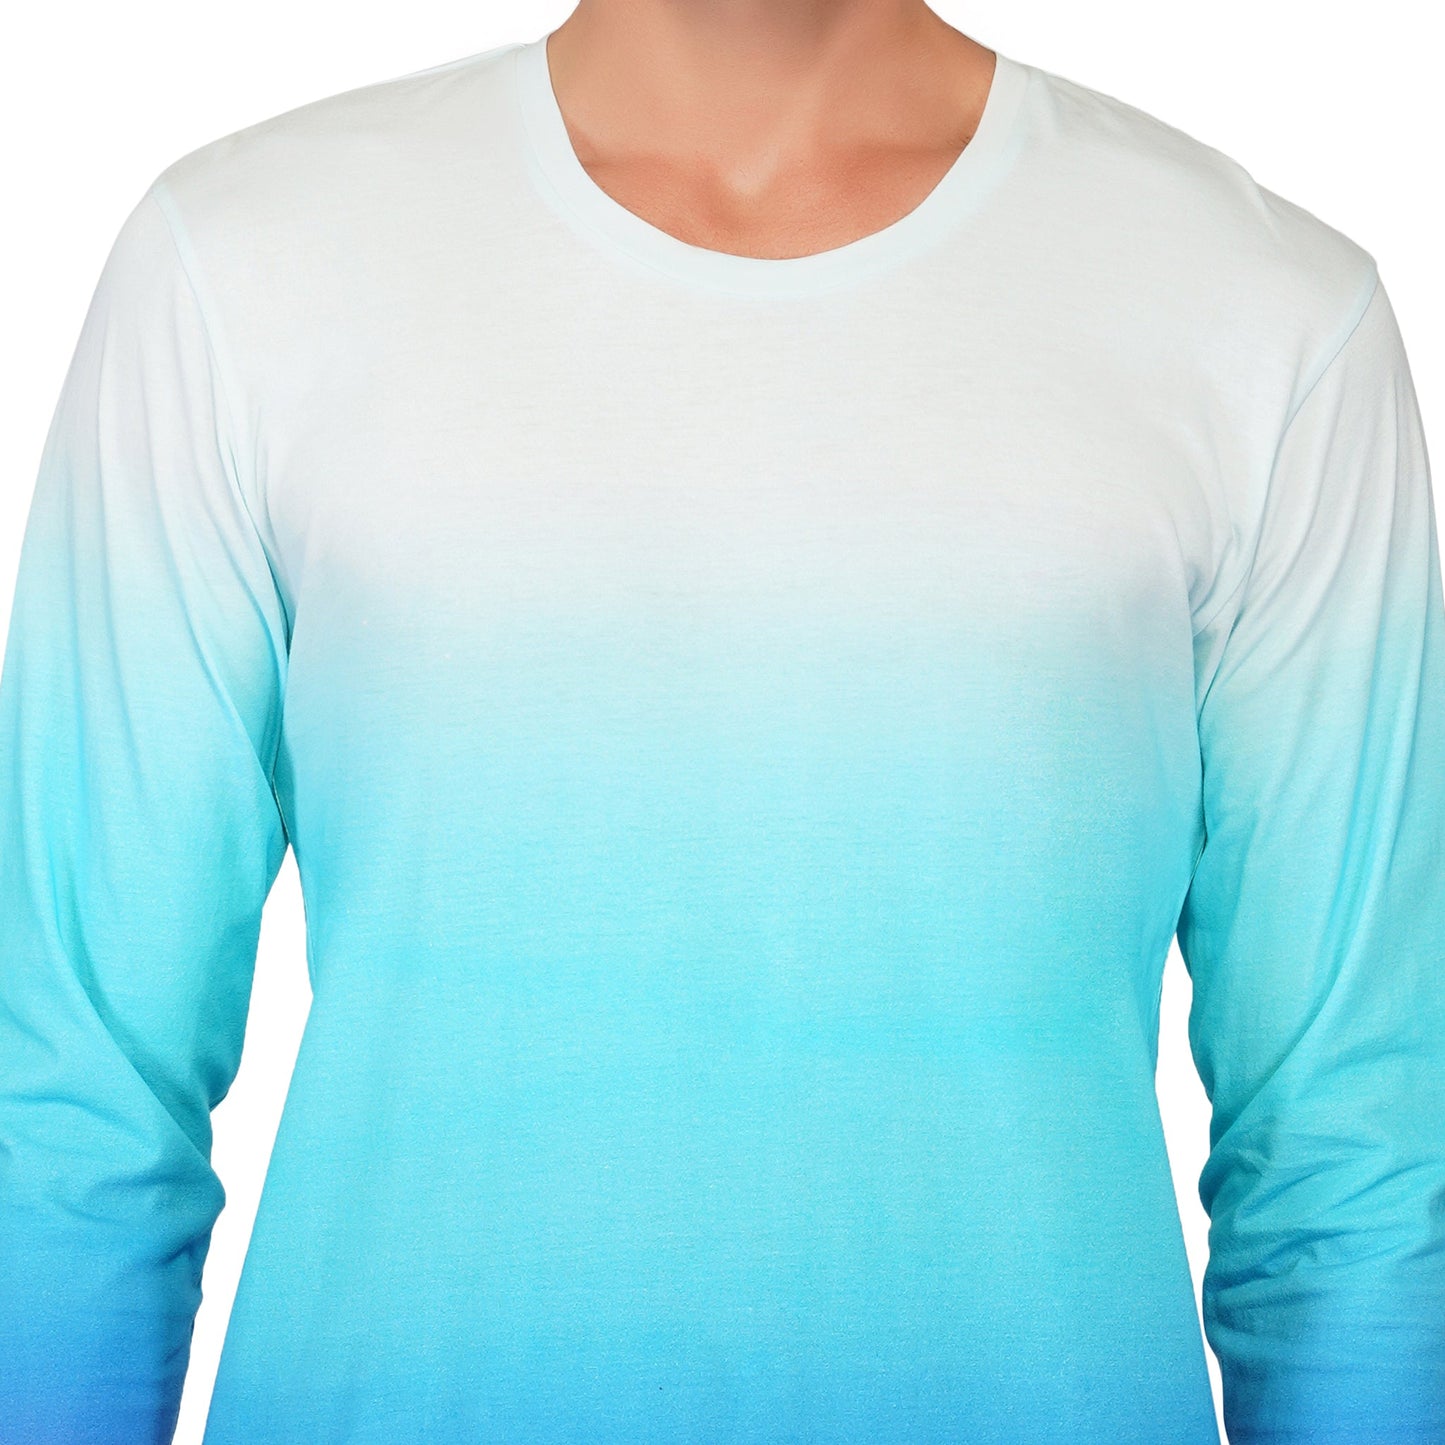 SLAY. Men's White to Blue Ombre Full Sleeves T Shirt